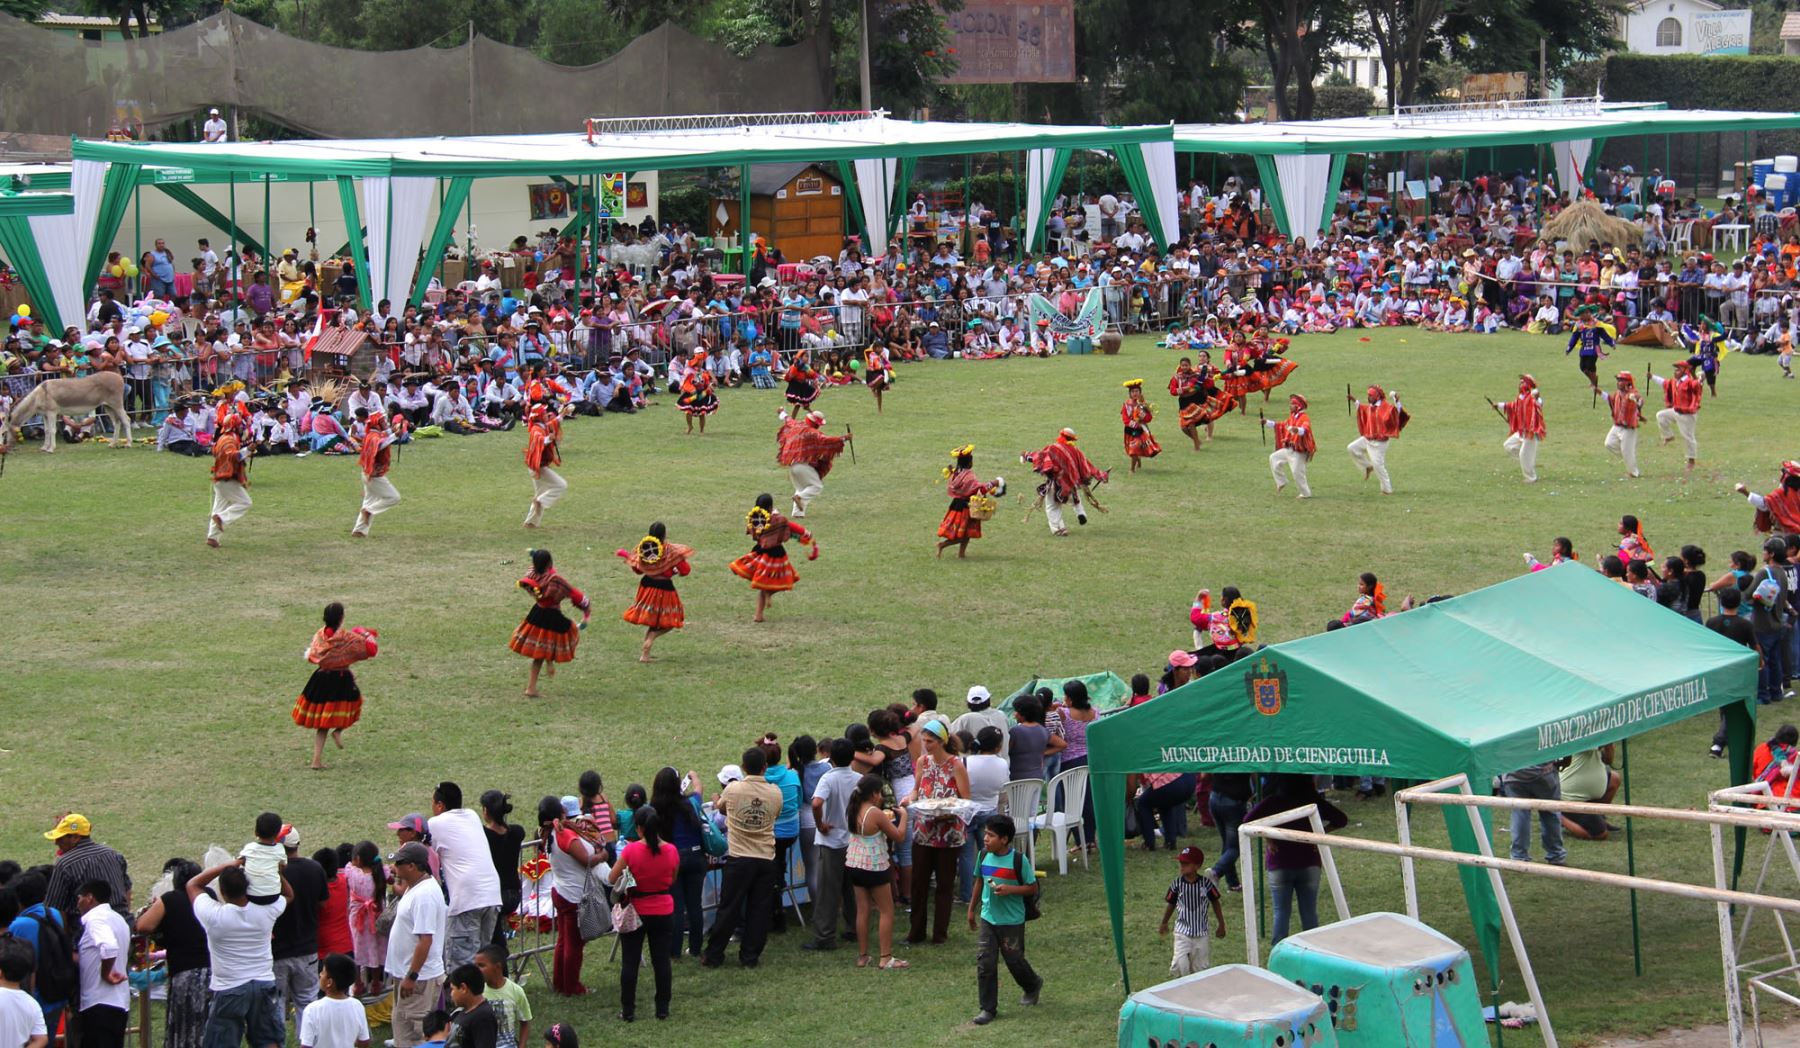 Concurso de pasacalles en el estadio municipal de Cieneguilla por Fiestas Patrias.